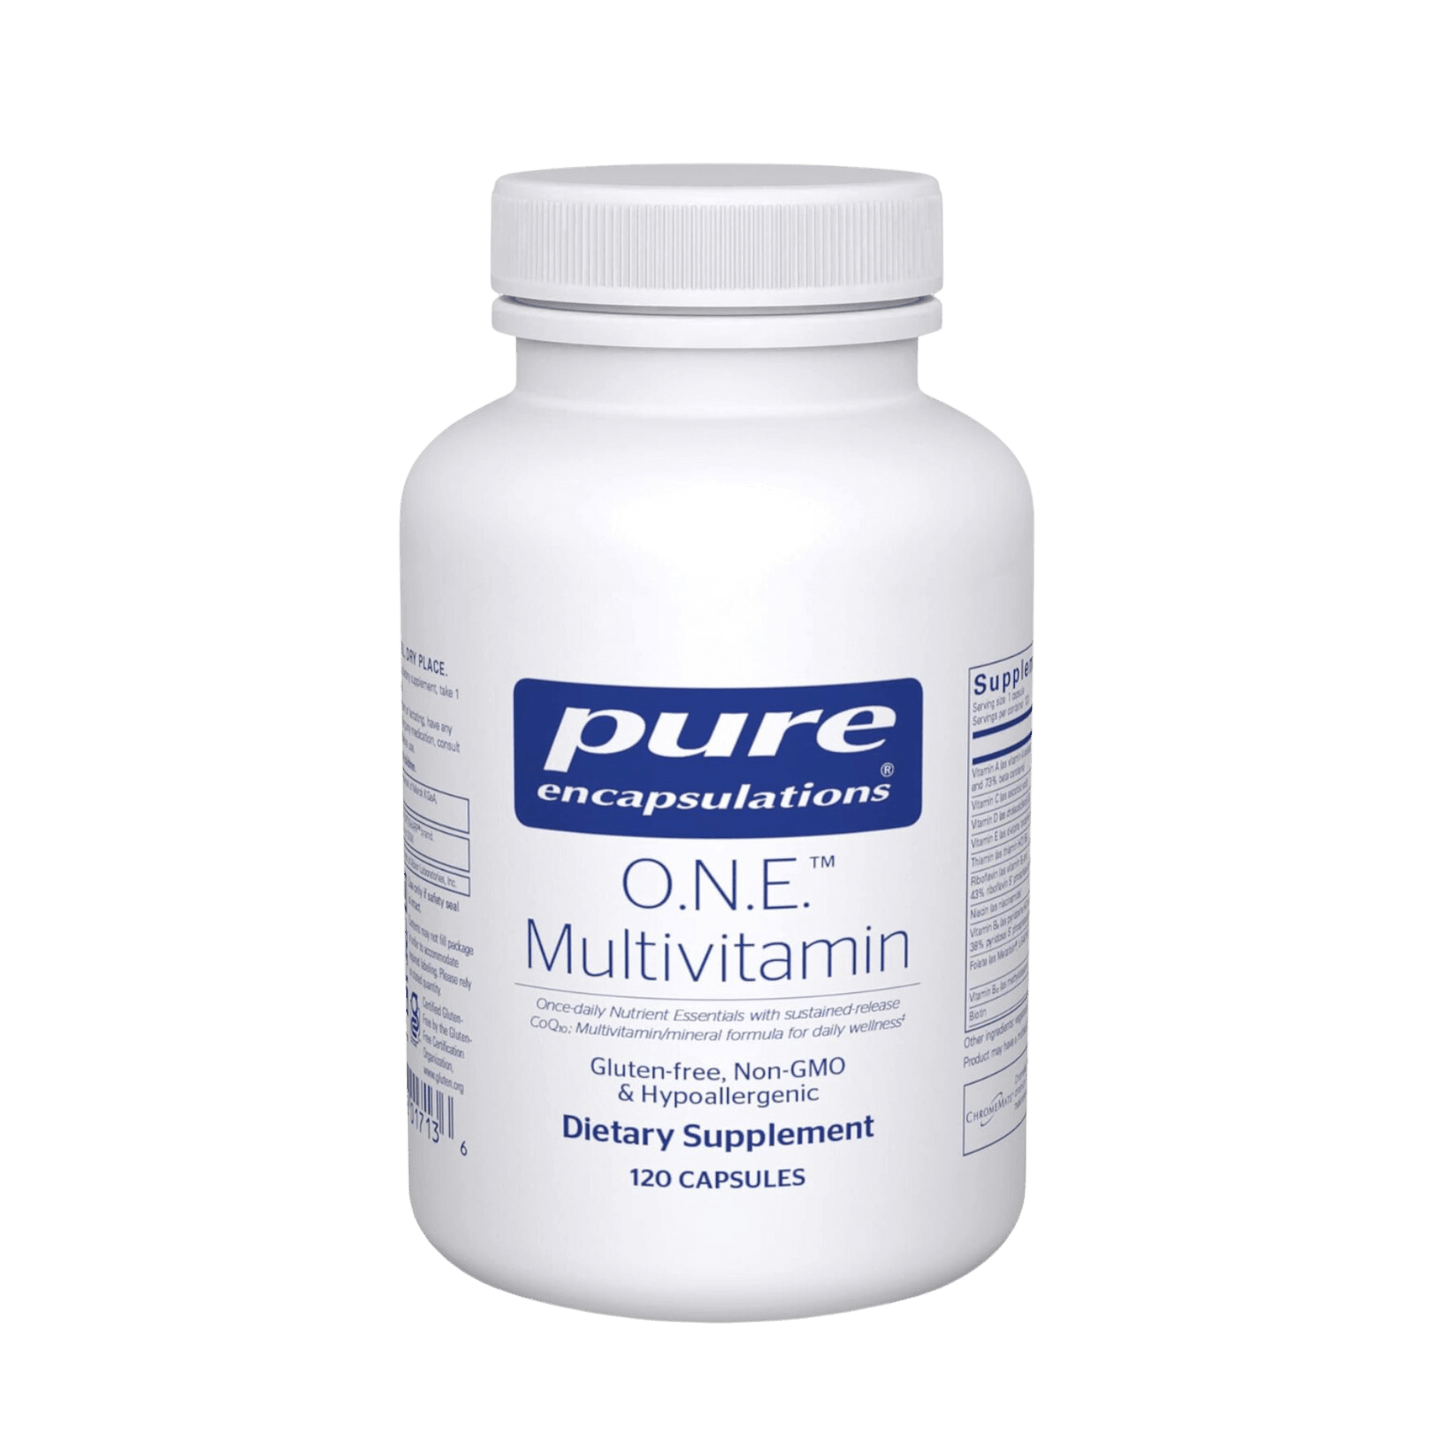 Pure Encapsulations ONE Multivitamin capsules